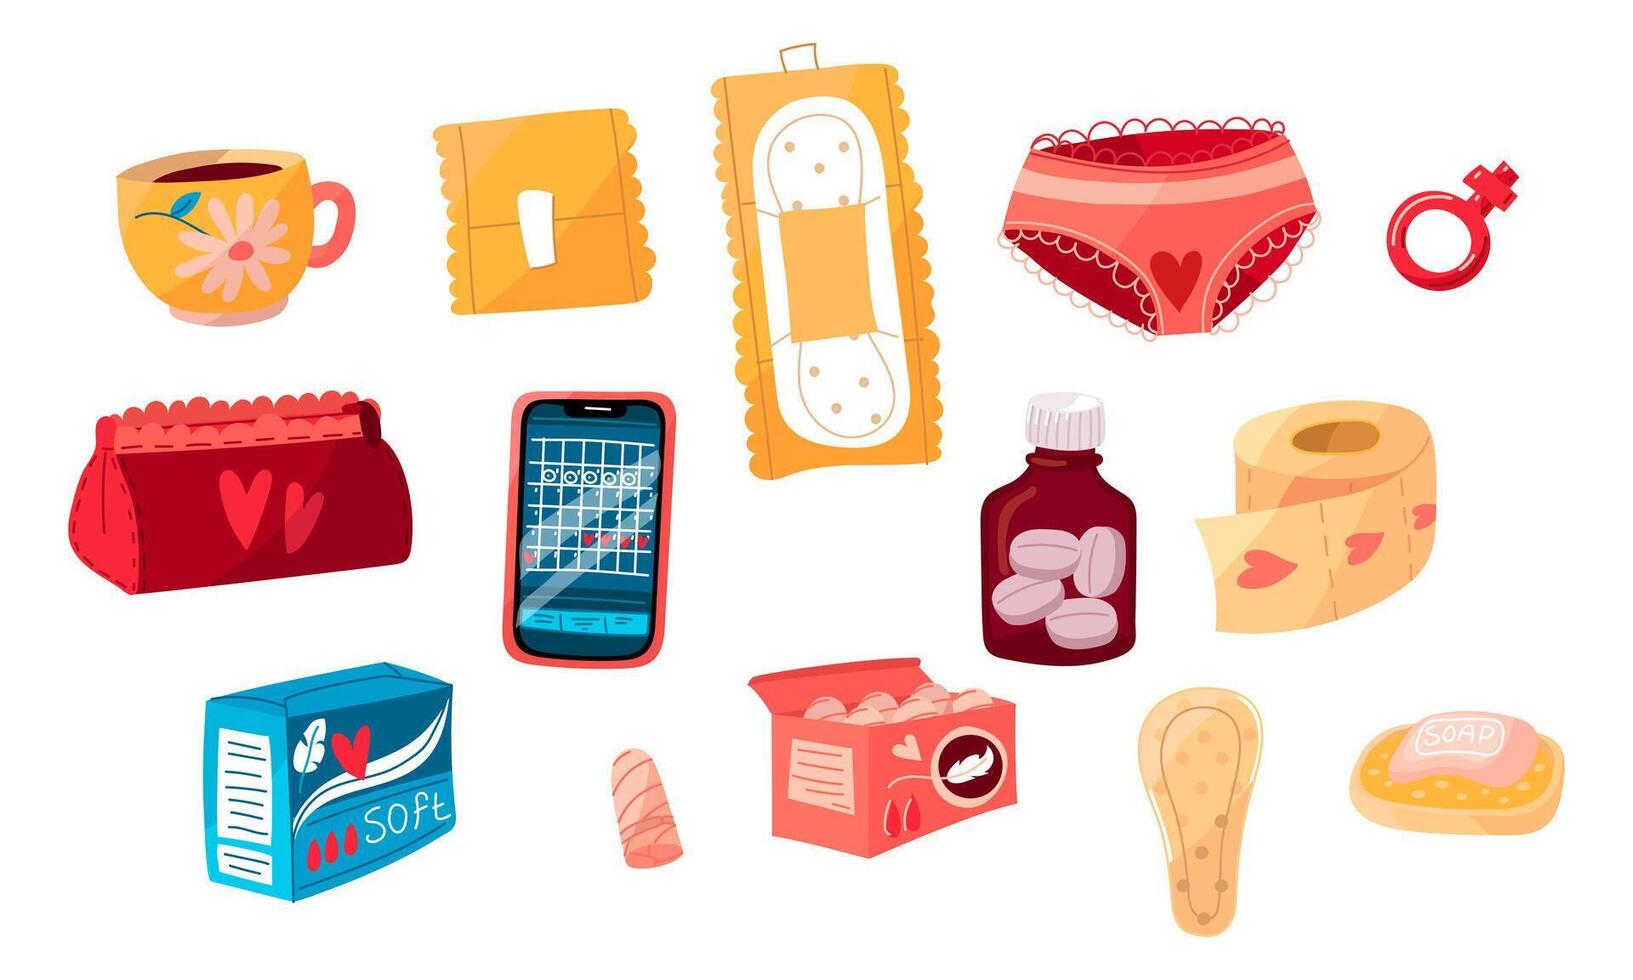 uma conjunto do menstruação almofadas, cuecas, uma telefone, uma caixa do almofadas, sabão, pílulas, uma caixa do absorvente interno e outros. a conceito do uma mulher regular menstrual ciclo. vetor ilustração do isolado objetos